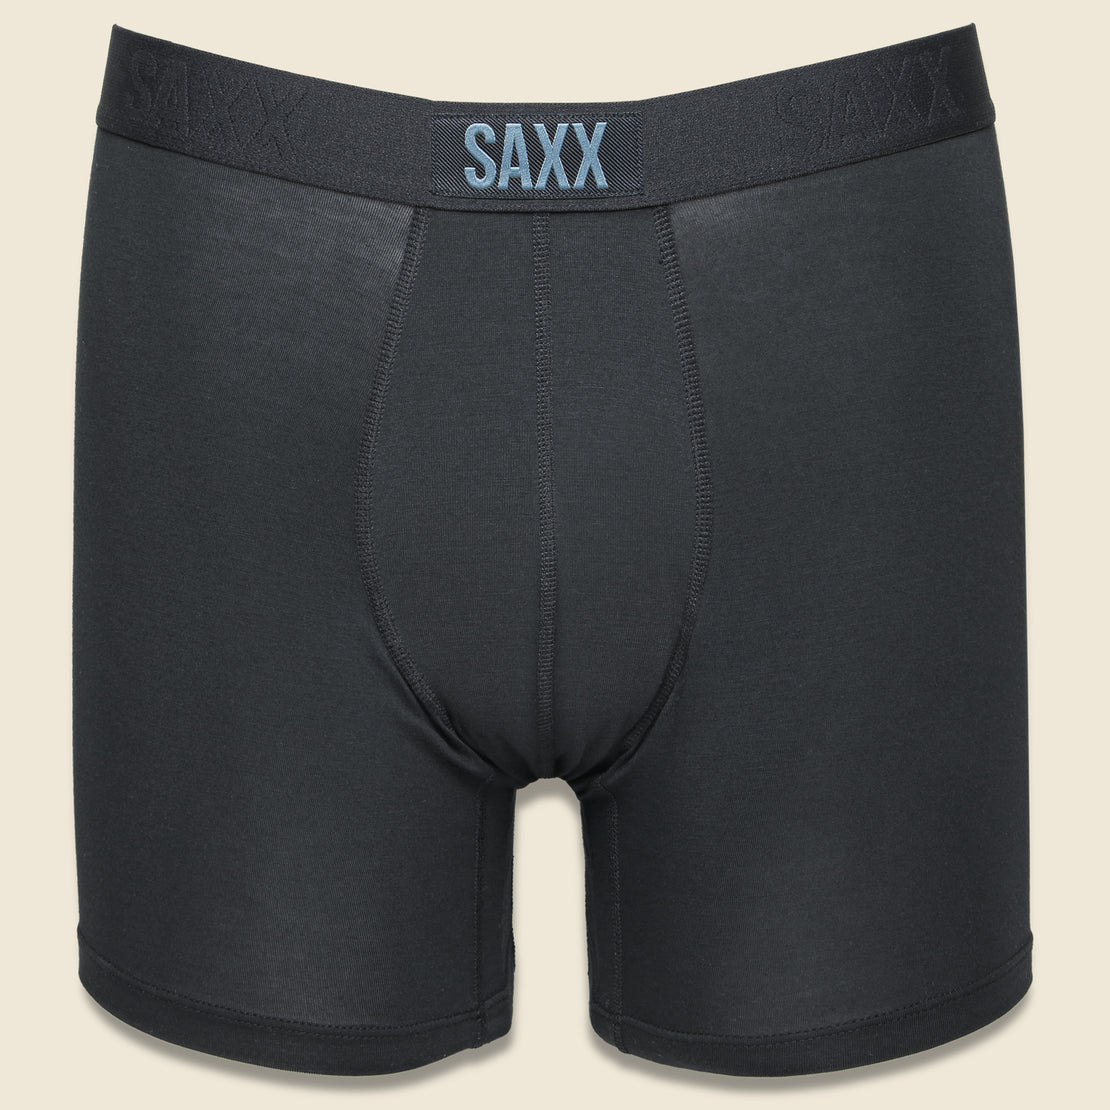 SAXX Vibe Boxer Brief - Black/Black